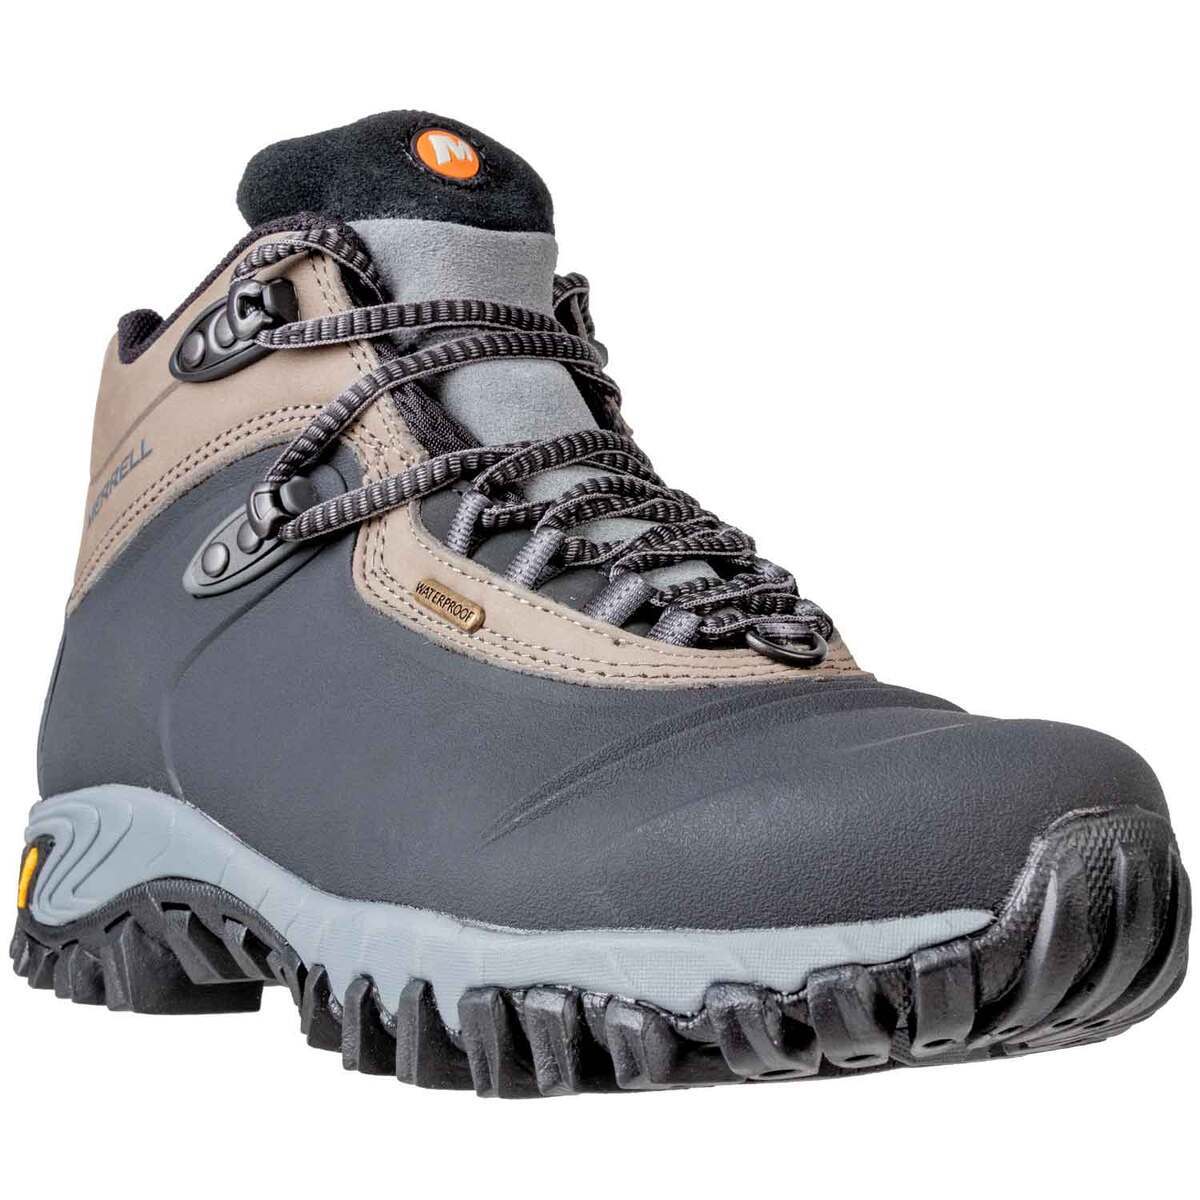 https://www.sportsmans.com/medias/merrell-mens-thermo-6-waterproof-mid-hiking-boots-black-size-9-1233277-1.jpg?context=bWFzdGVyfGltYWdlc3wxMTkyNjZ8aW1hZ2UvanBlZ3xoMmUvaGNkLzExNjU4ODgyMTg3Mjk0LzEyMDAtY29udmVyc2lvbkZvcm1hdF9iYXNlLWNvbnZlcnNpb25Gb3JtYXRfc213LTEyMzMyNzctMS5qcGd8NjFjMjkyZTI2ZDVkM2MyZDUyNWYxNDQyNzdiMTQ3YzFjMDcwNjI3YTY4ZDRjYTYyOWIxZWE3ZjU2YWEwNjY0ZA